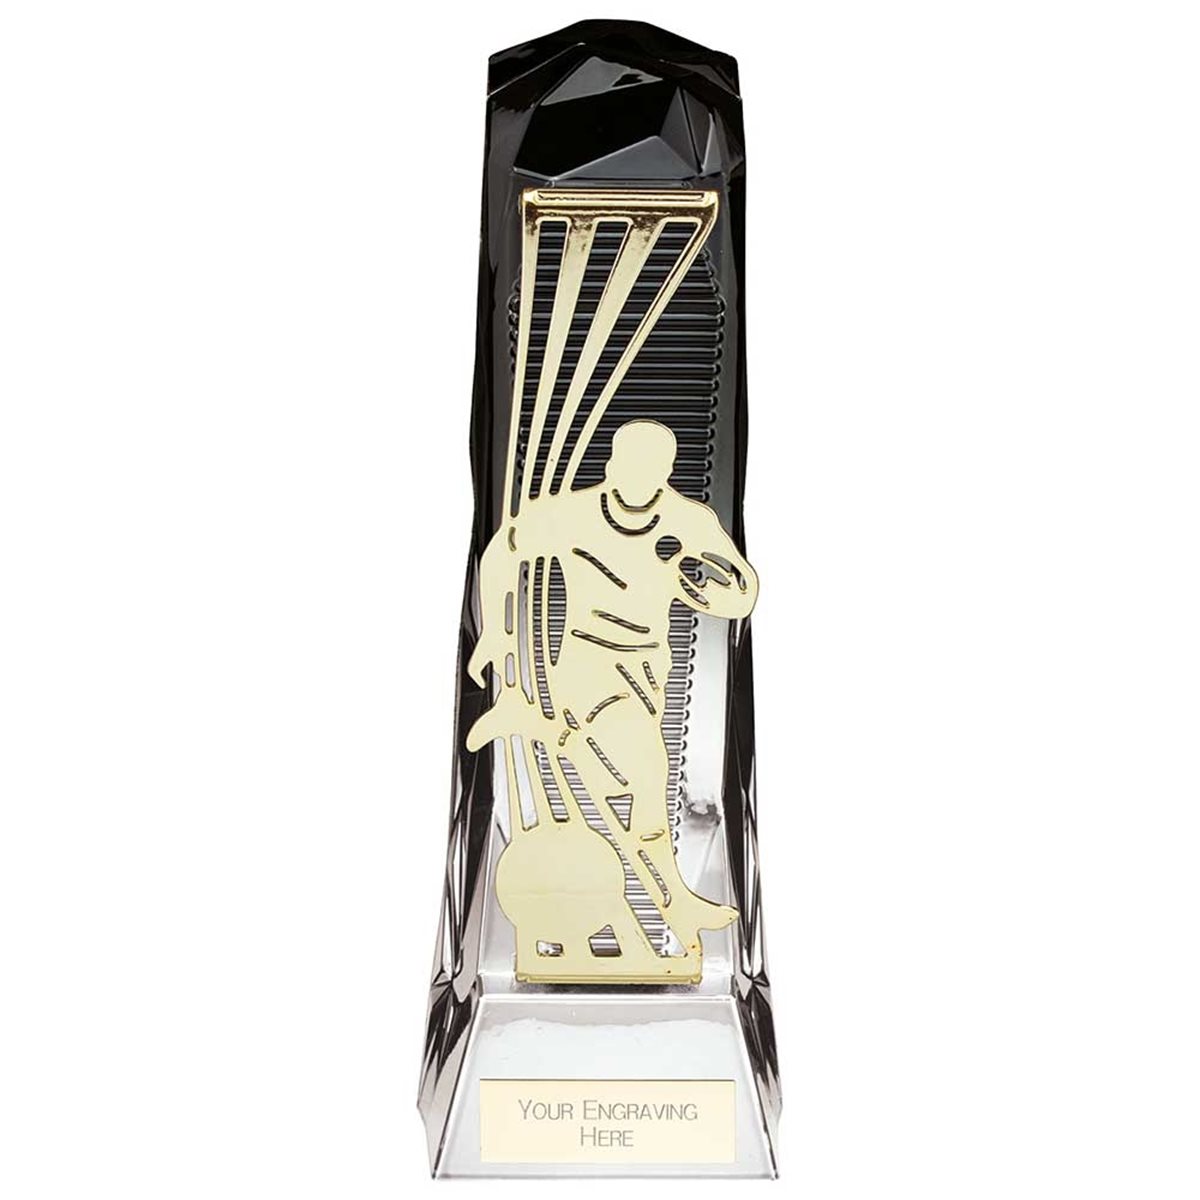 Shard Rugby Award PA24018